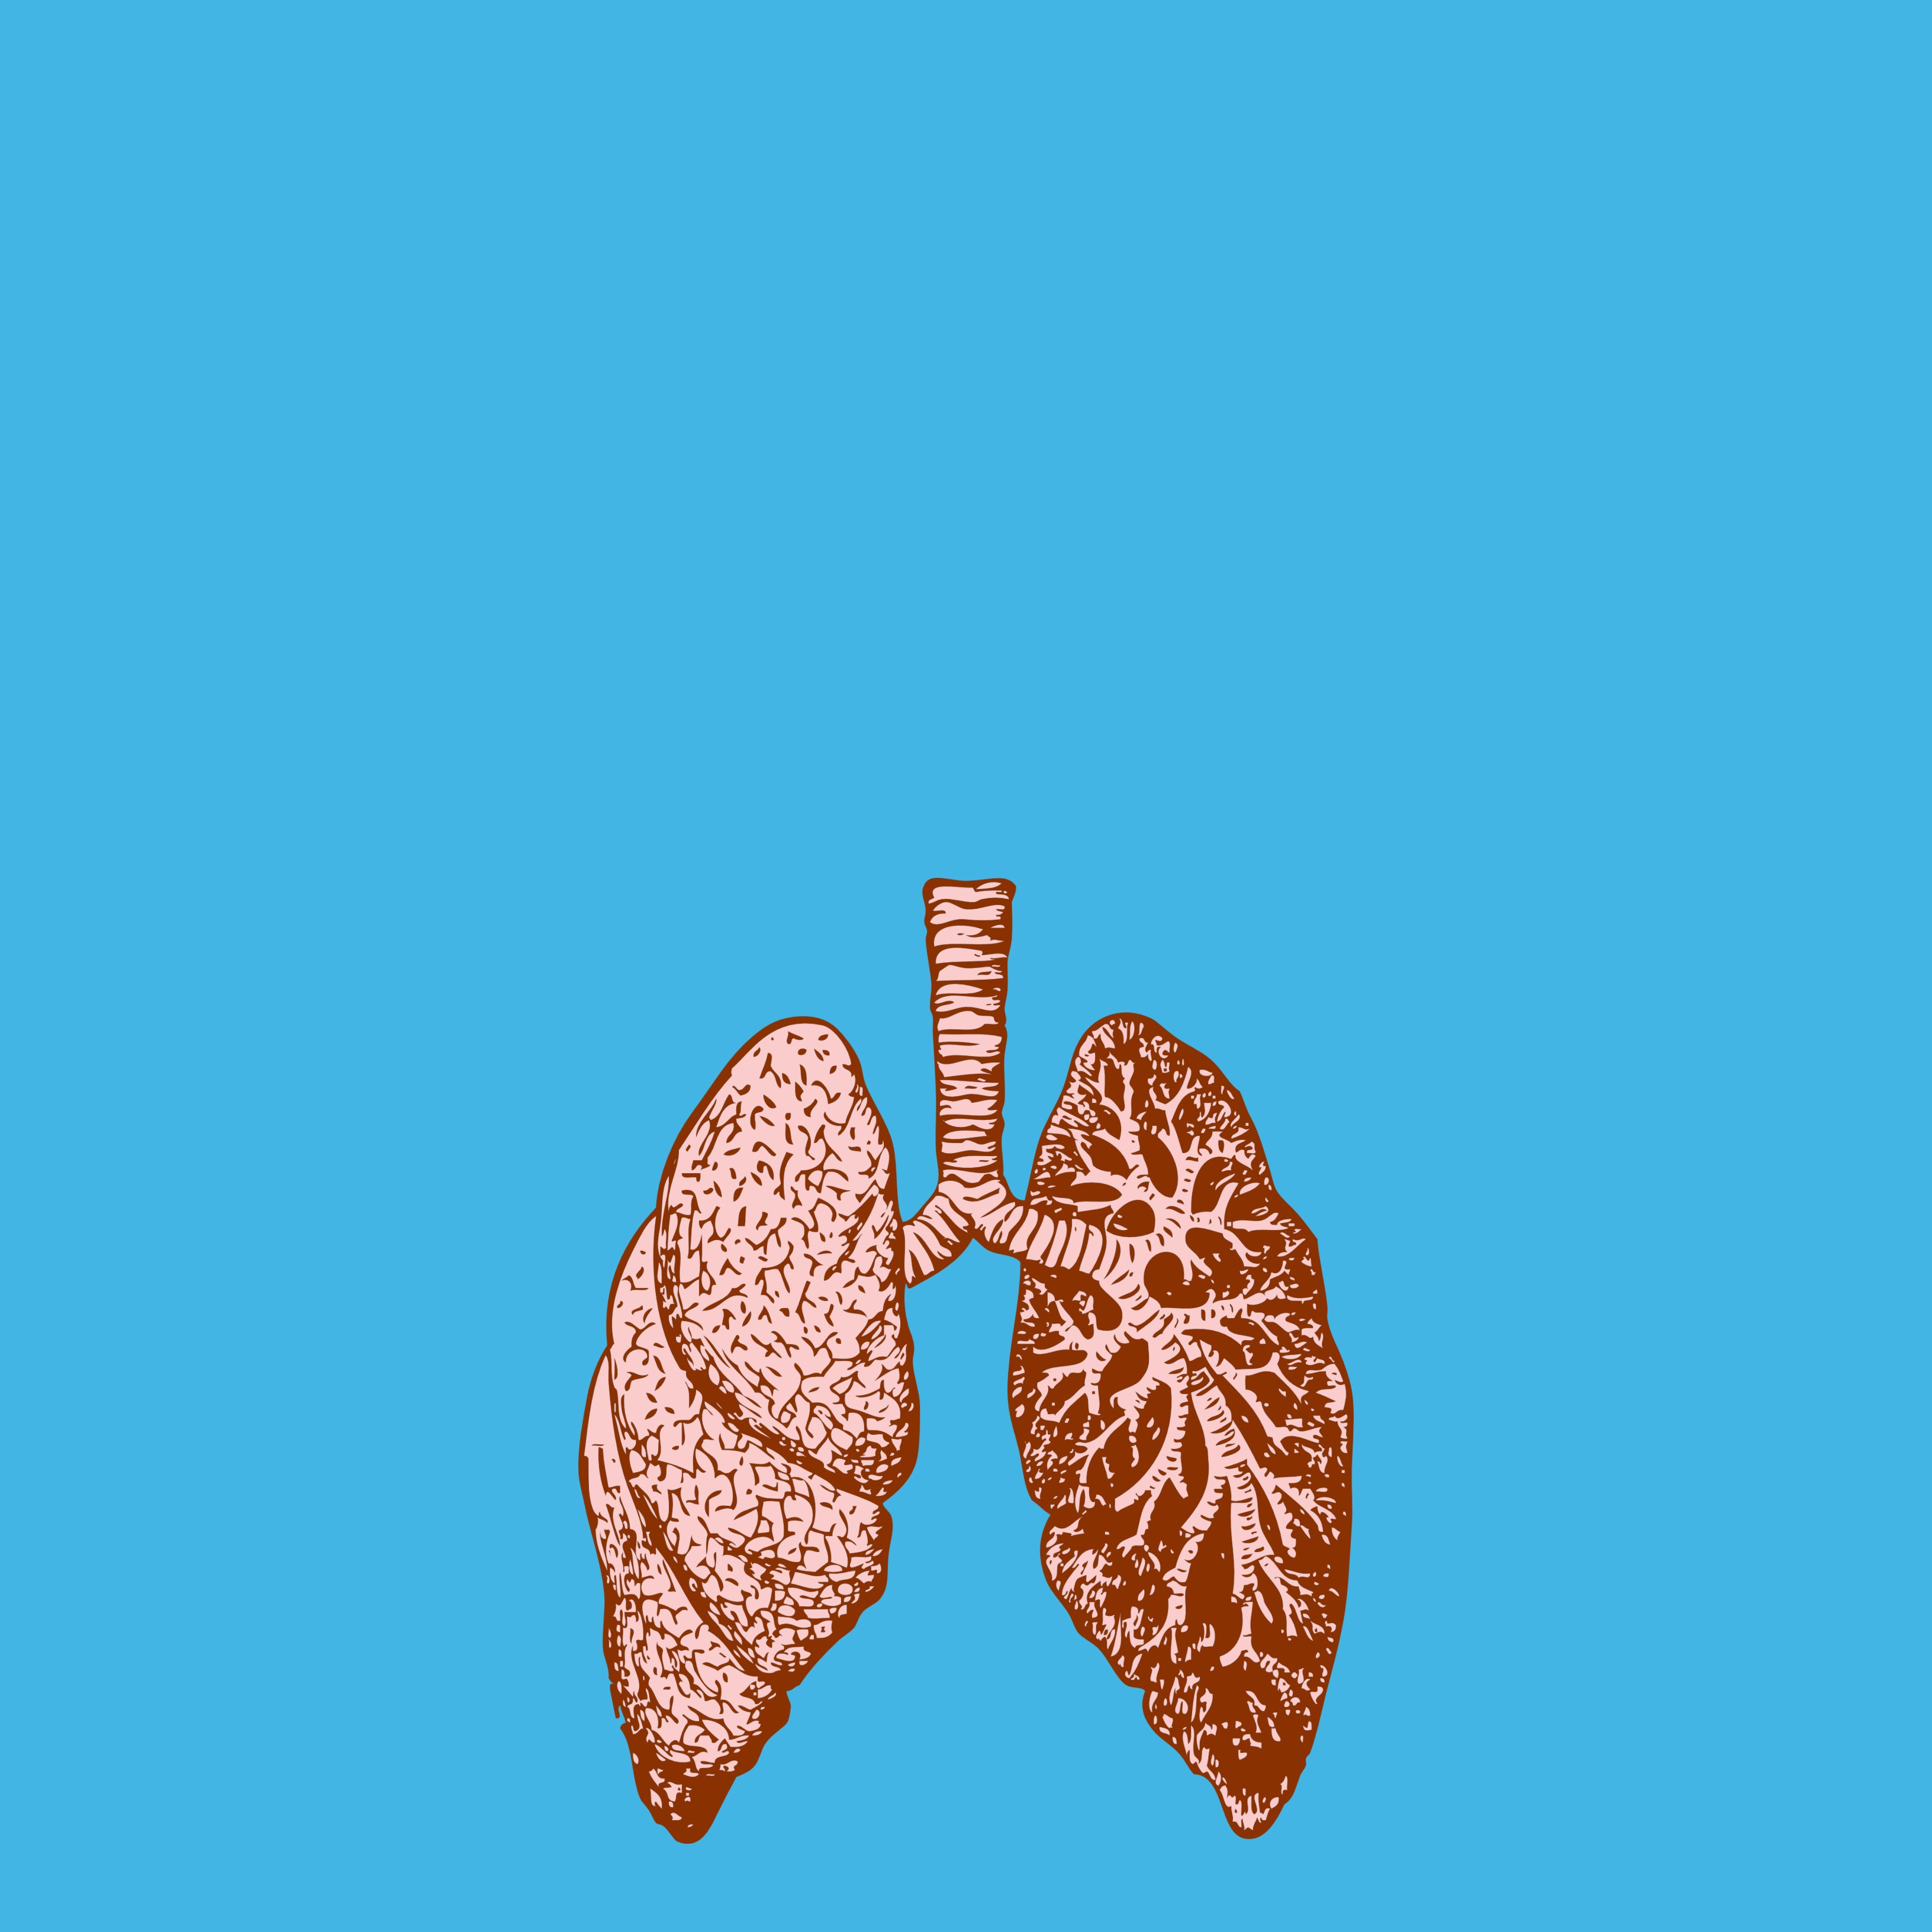 La calor de l'estiu pot afectar els teus pulmons